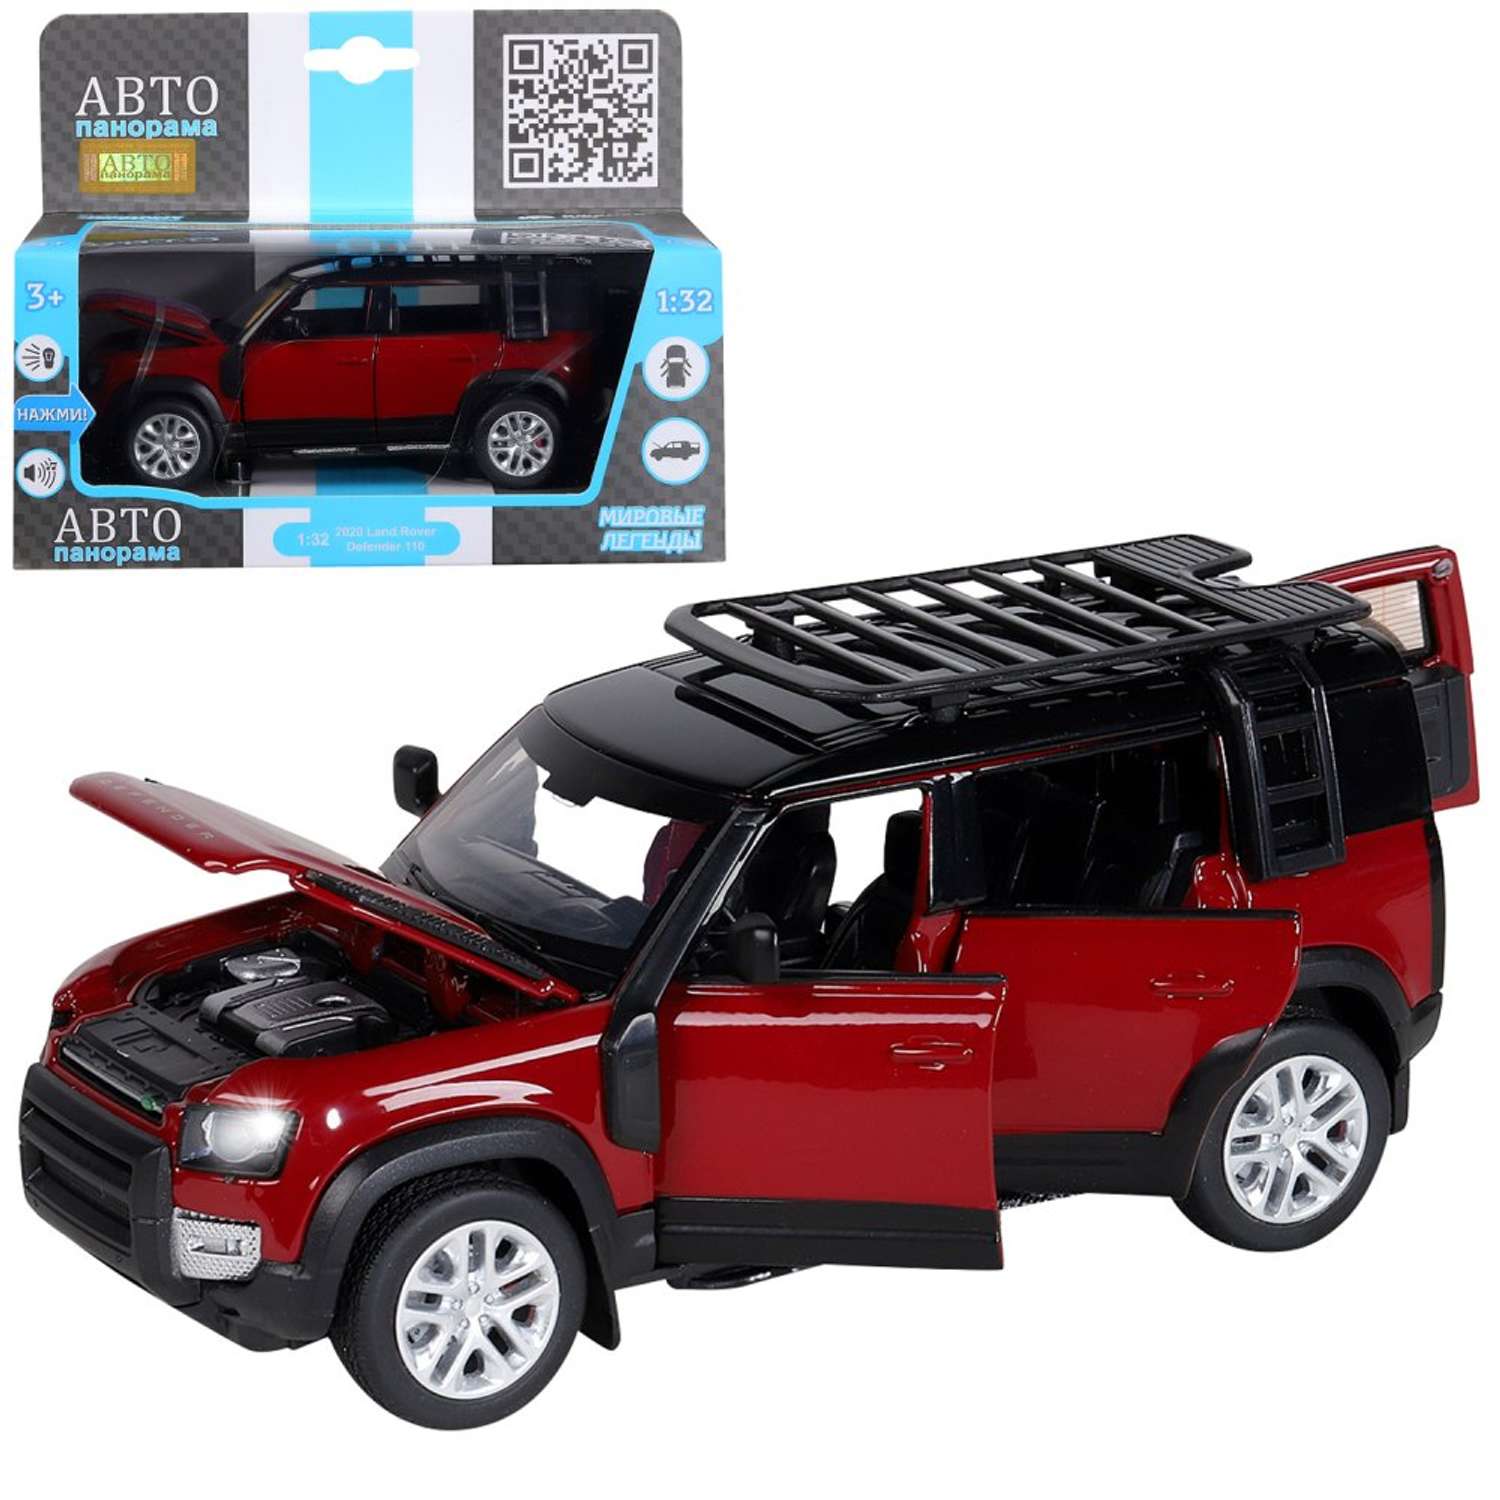 Машинка металлическая АВТОпанорама игрушка детская Land Rover Defender 110 1:32 красный JB1251469 - фото 4